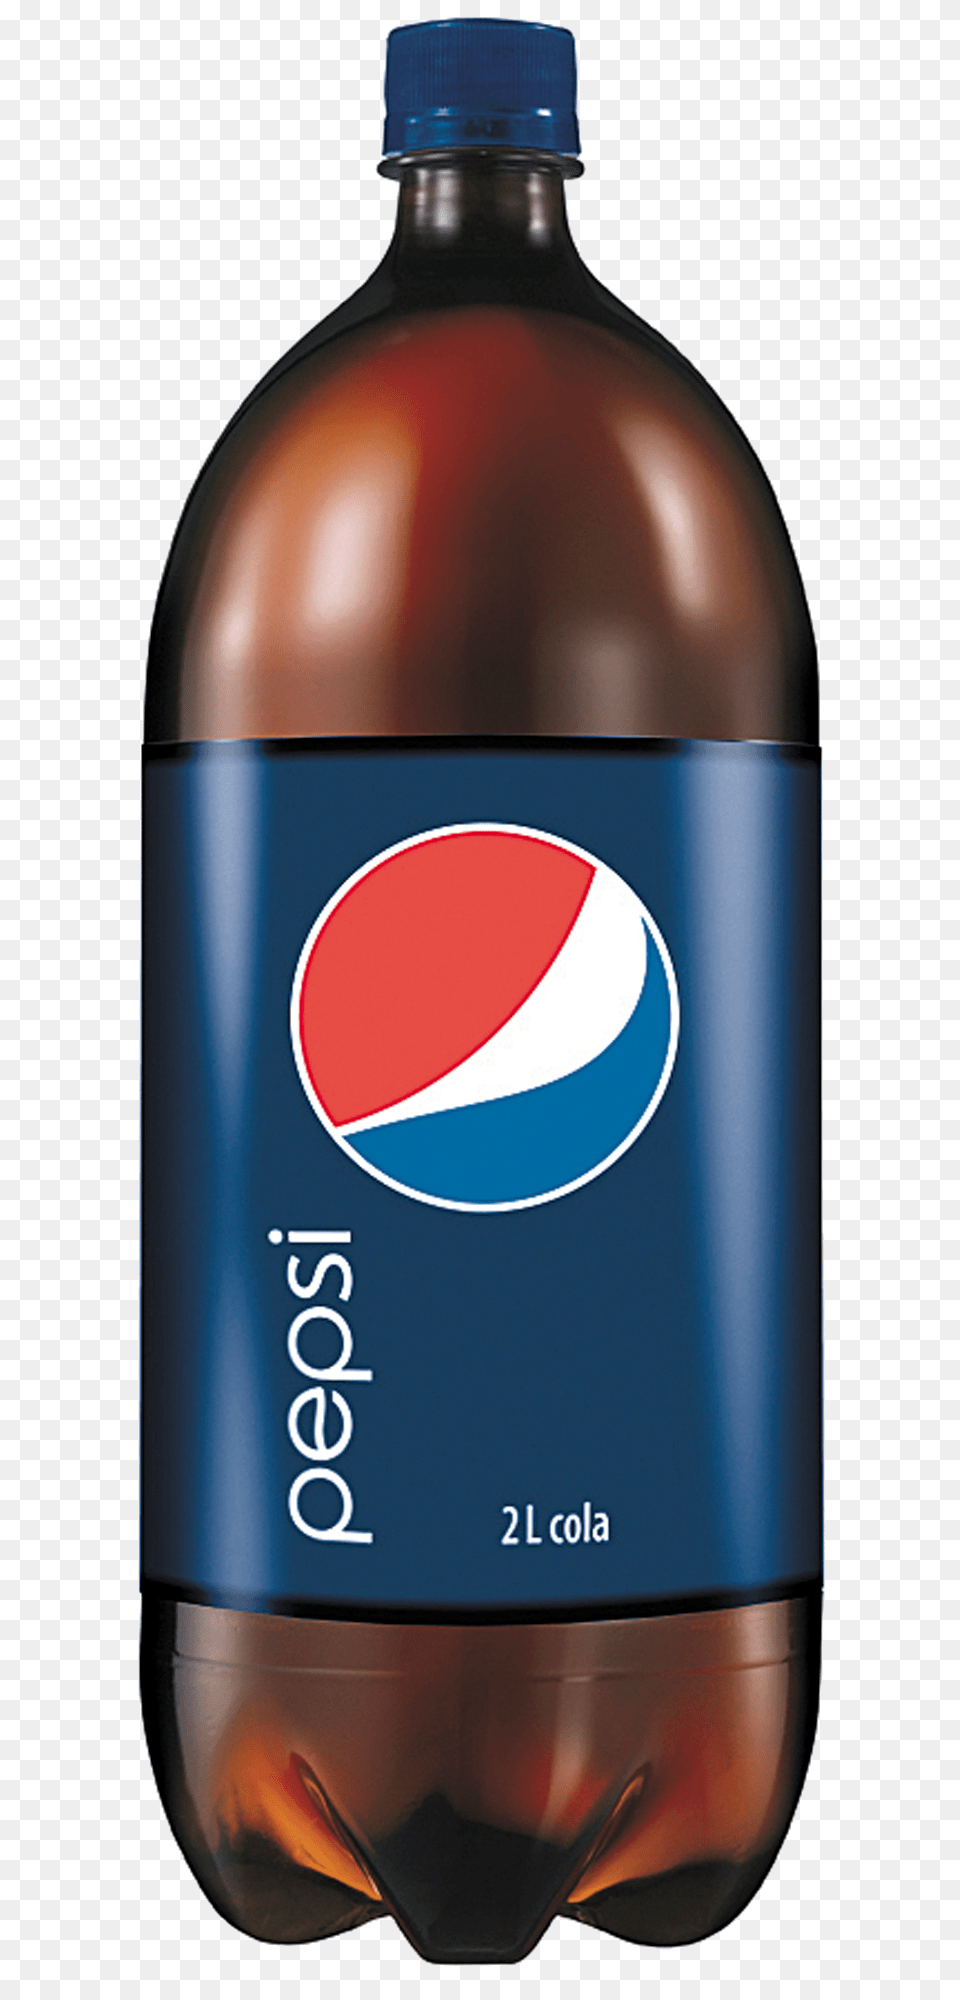 Pepsi, Beverage, Soda, Bottle, Pop Bottle Png Image